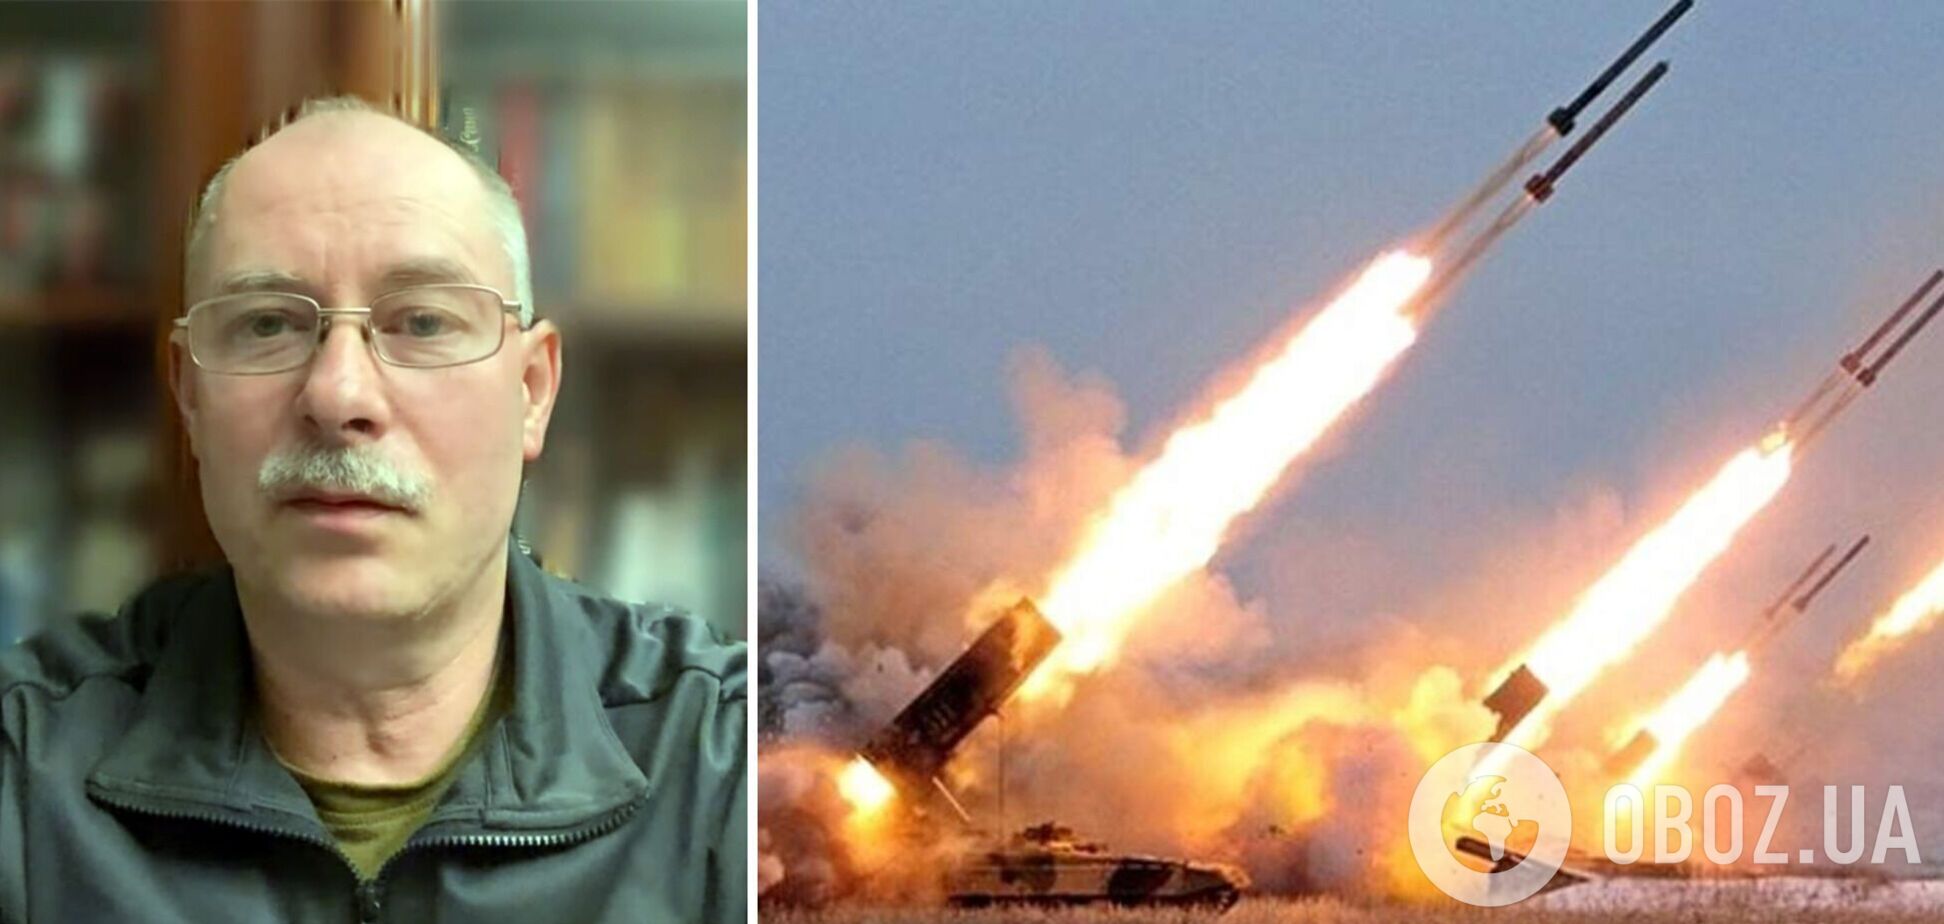 Путин устроил массированный ракетный удар не просто так: Жданов назвал возможные причины атаки. Видео